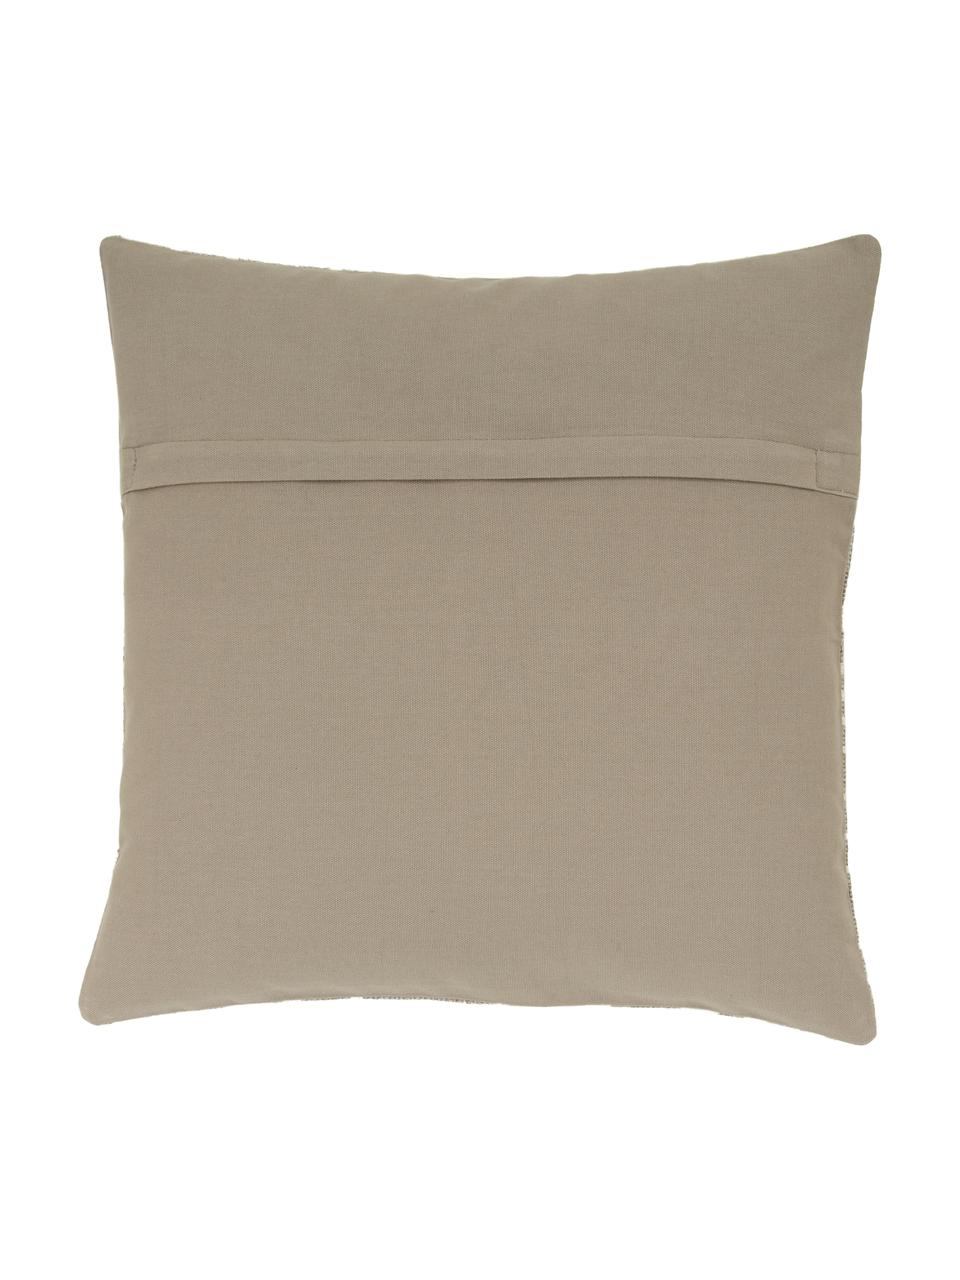 Poszewka na poduszkę Nomad, 100% bawełna, Beżowy, kremowobiały, S 45 x D 45 cm